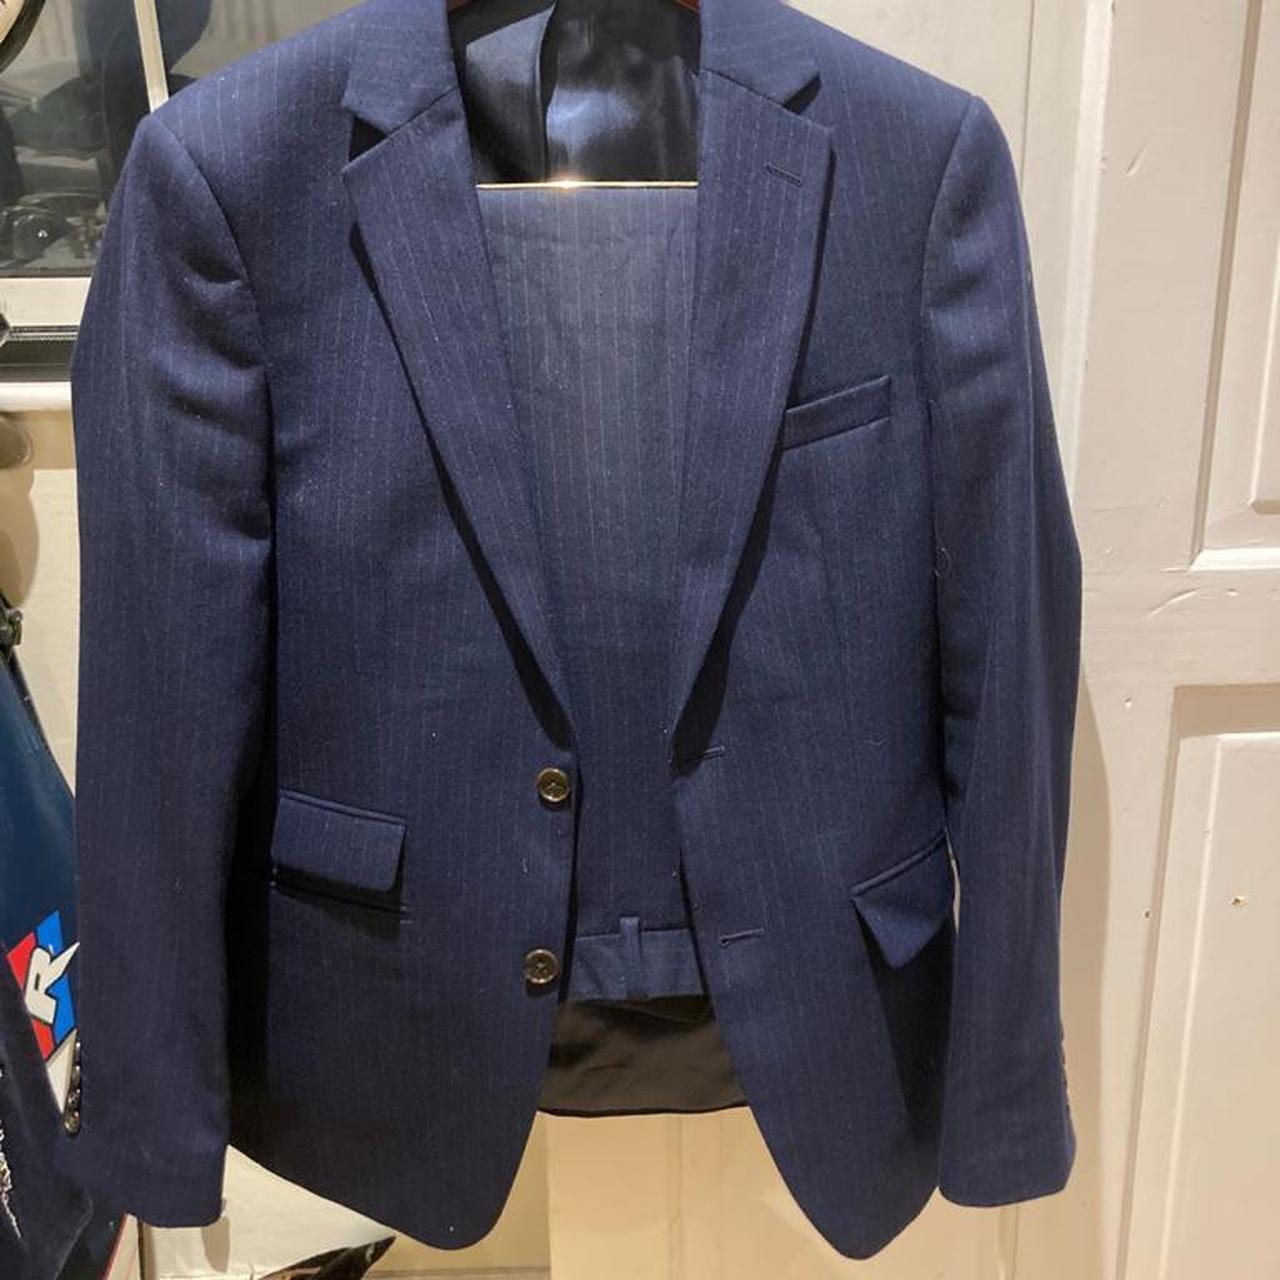 Moss Bros men’s suit - navy pinstripe Jacket 48... - Depop